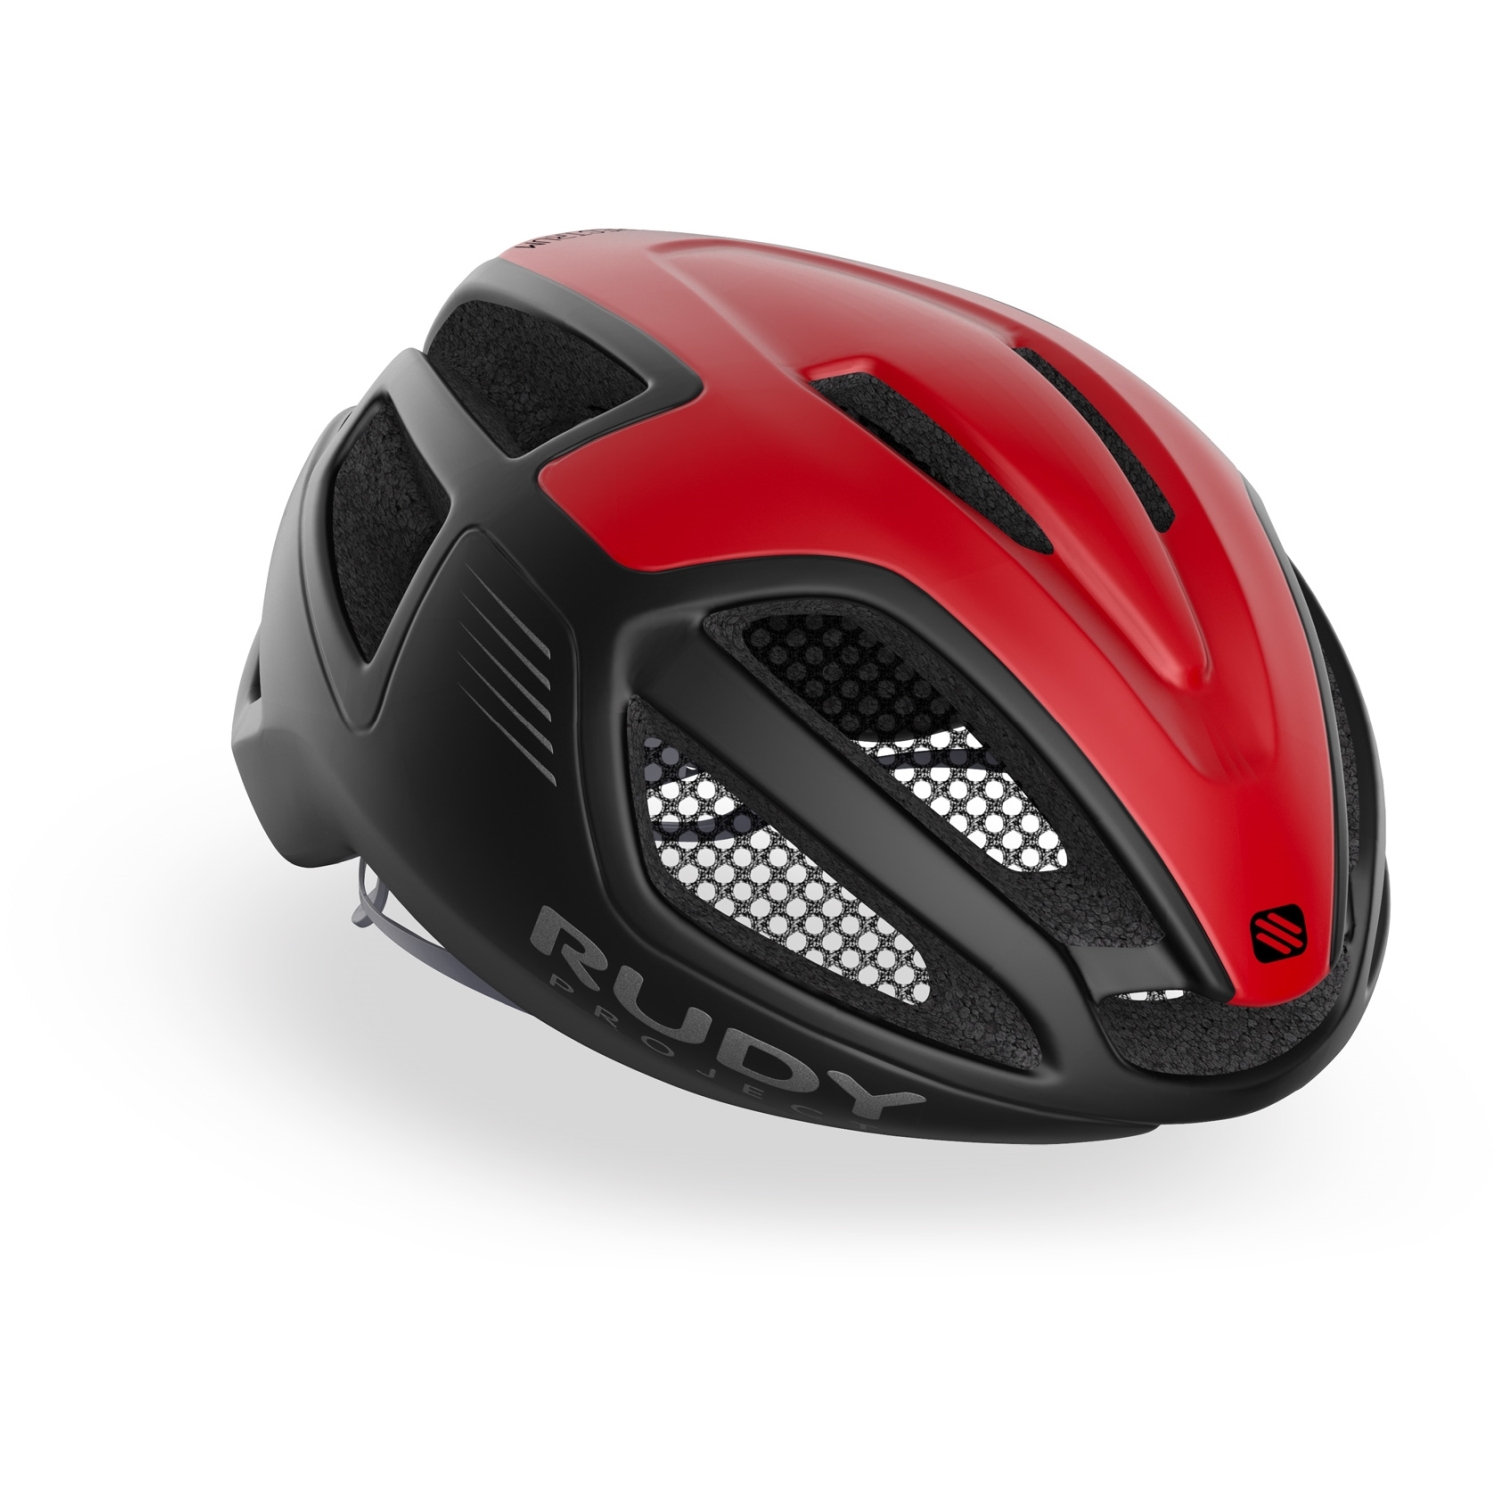 Productfoto van Rudy Project Spectrum Helmet - Red/Black Matte